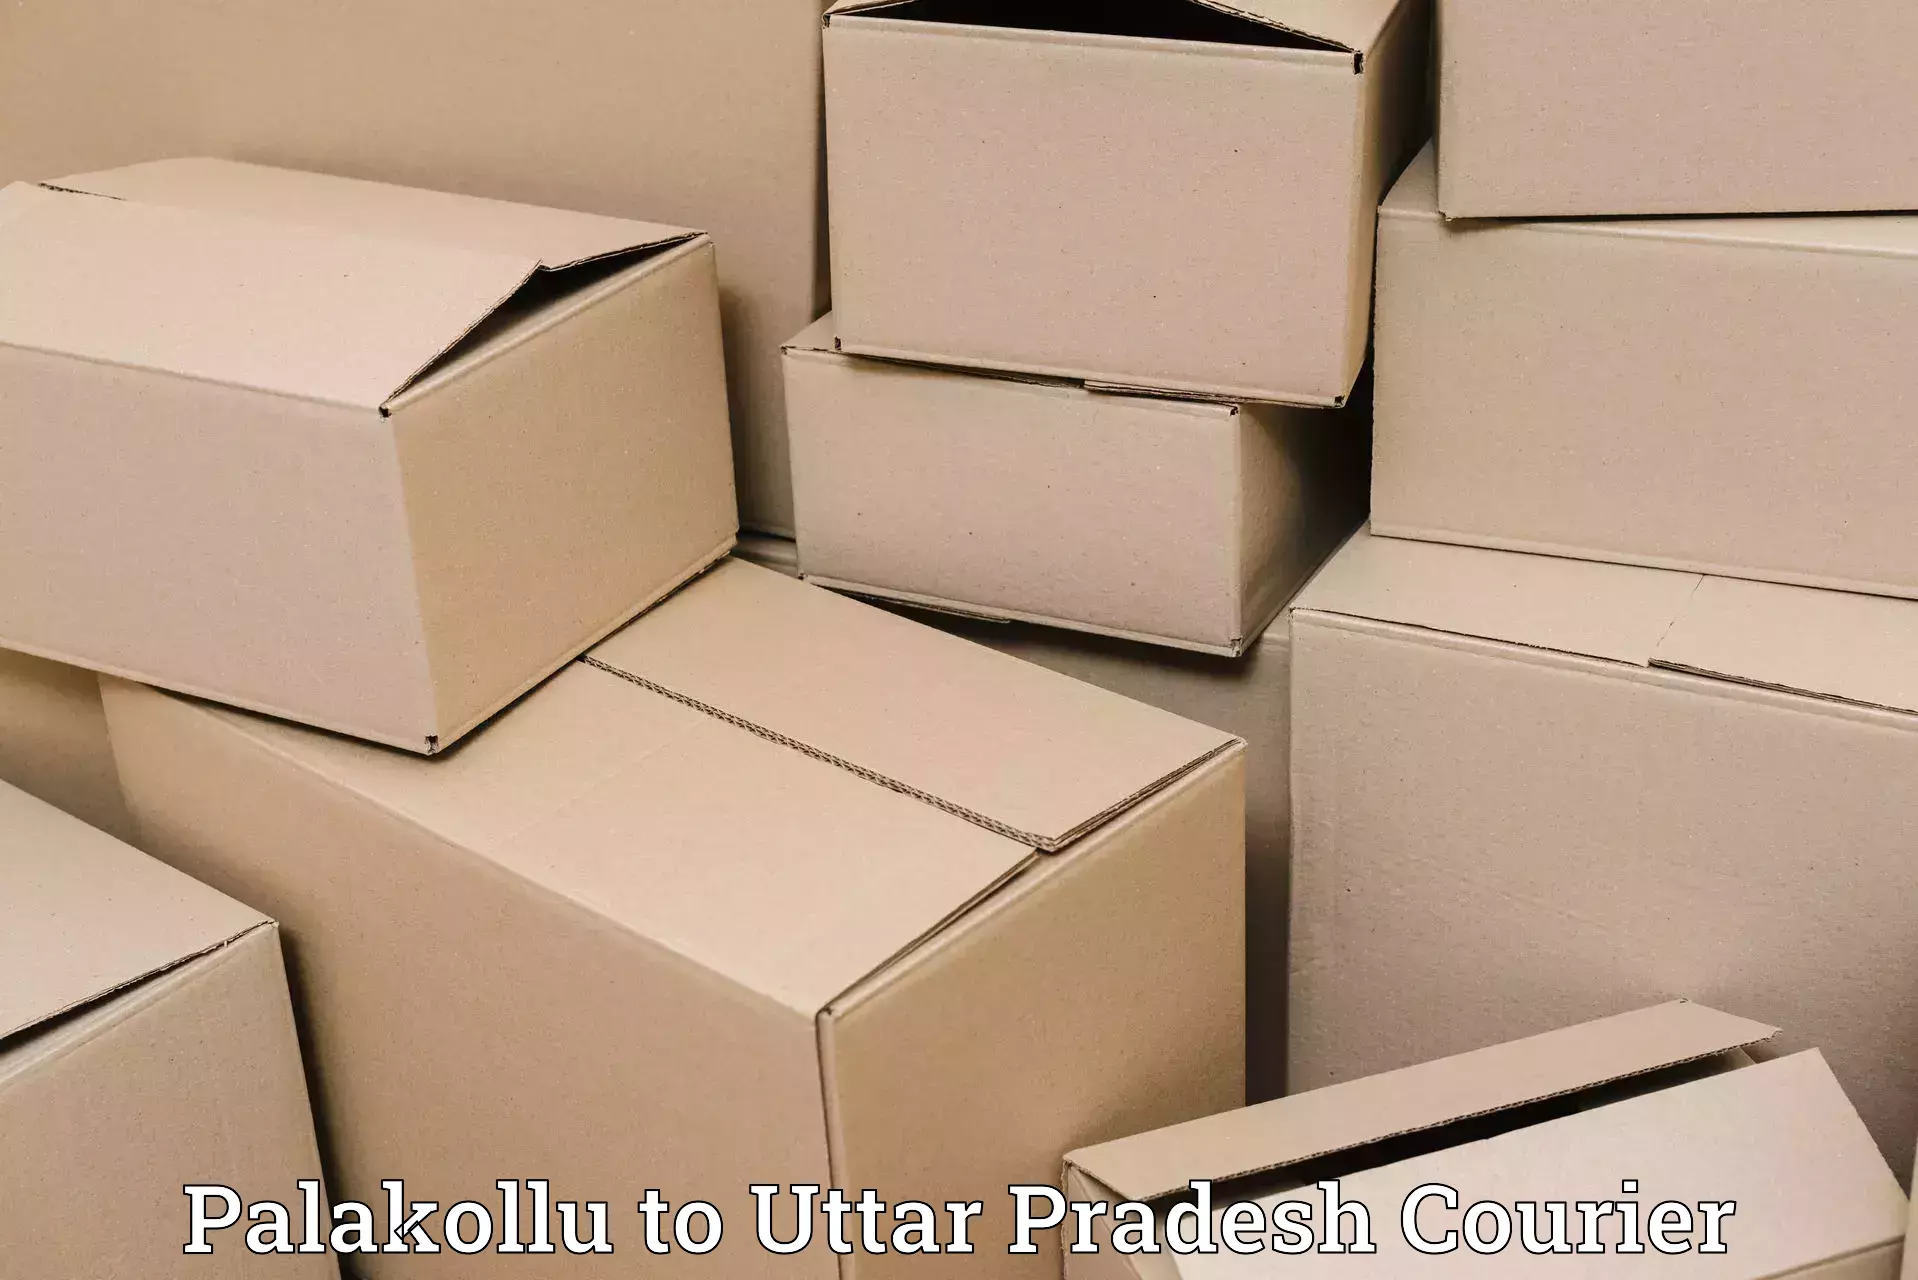 Pharmaceutical courier Palakollu to Thakurdwara